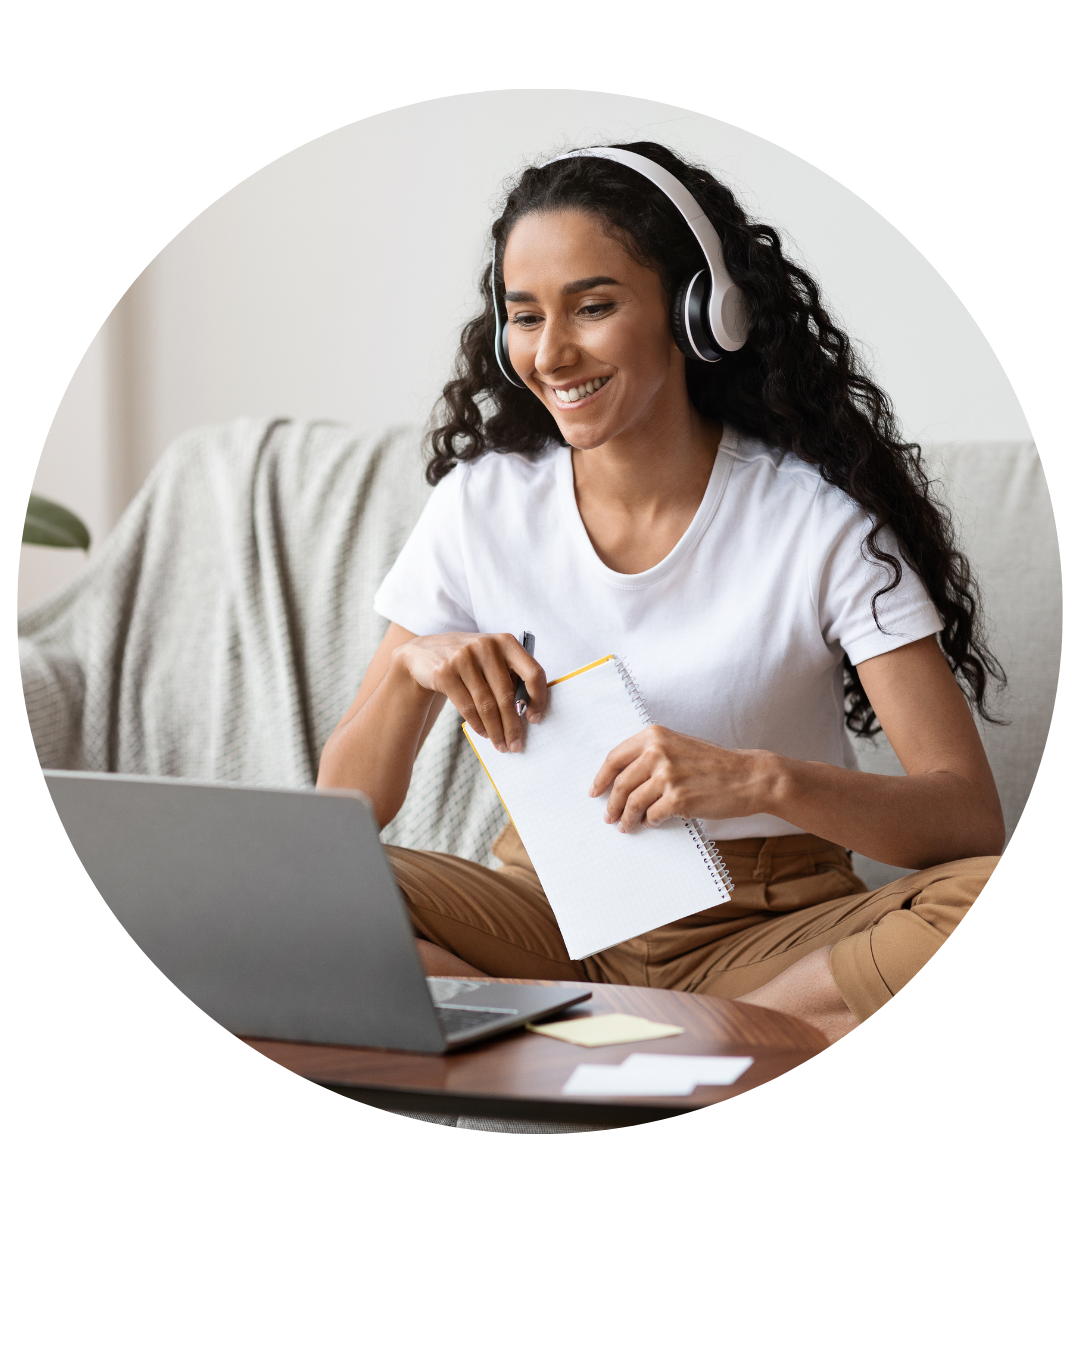 Mulher sorridente usando fones de ouvido e escrevendo em um caderno enquanto olha para a tela do laptop.